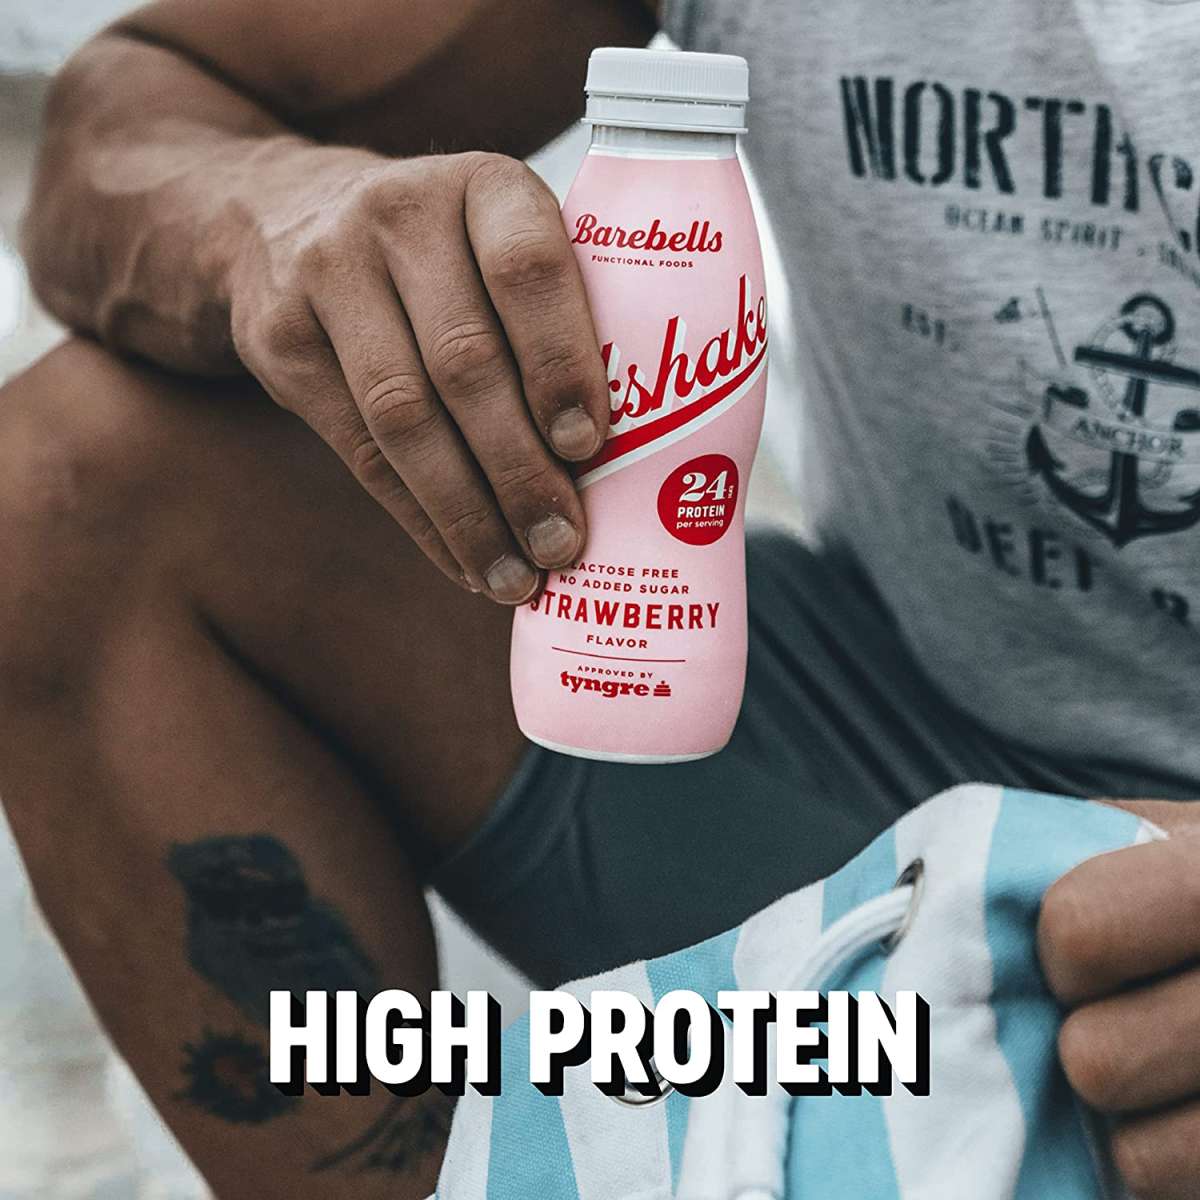 Barebells Milkshake Protein Drink - 330ml